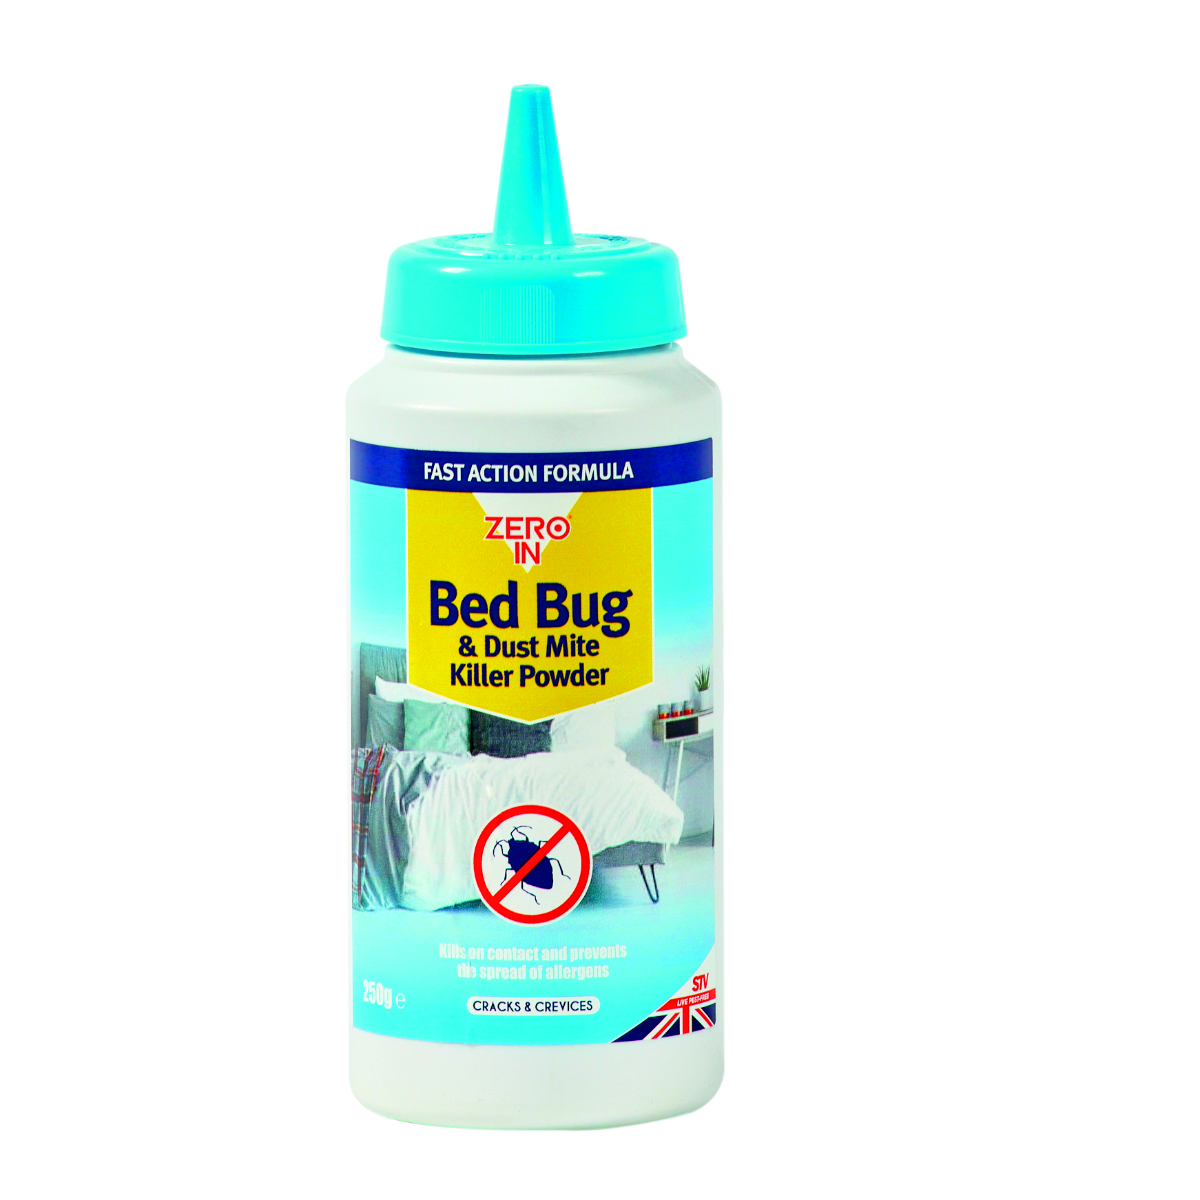 Zero-In-Bed-Bug-&-Dust-Mite-Killer-Powder-250g